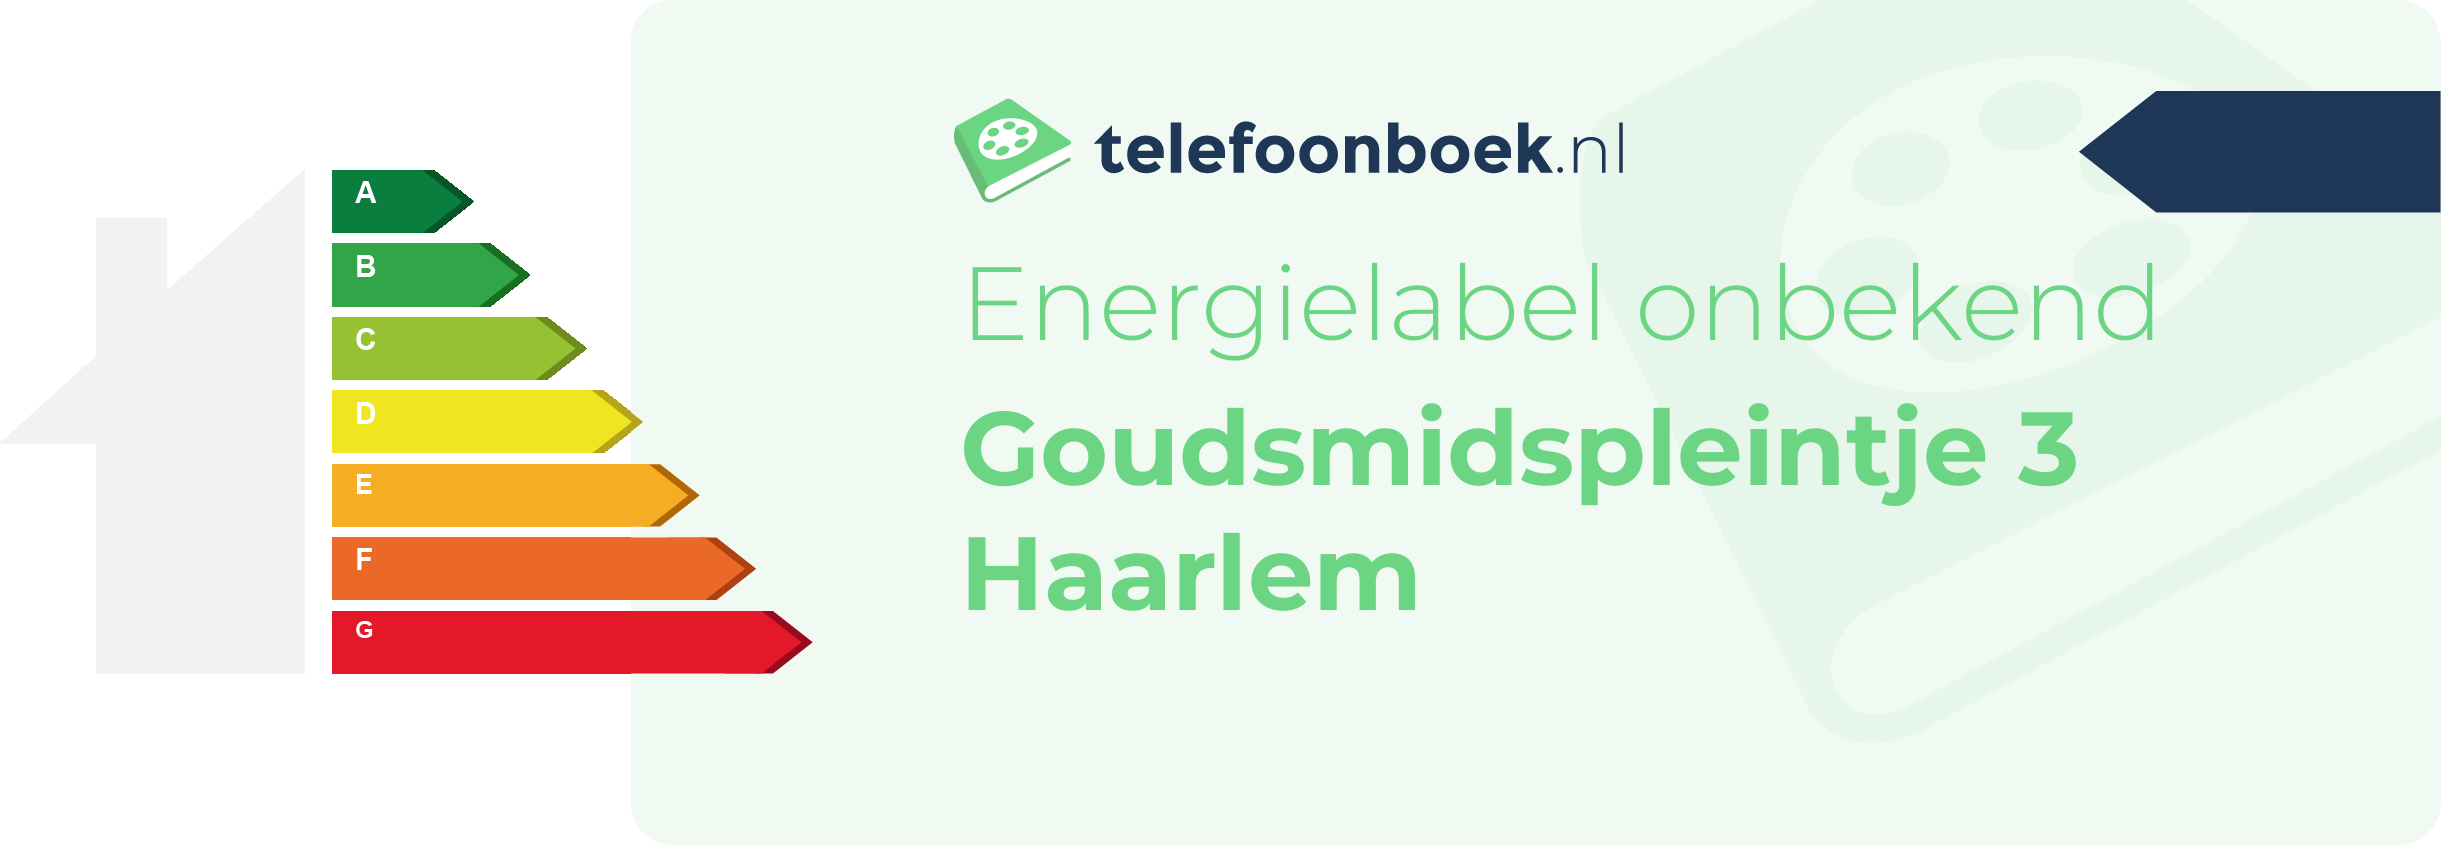 Energielabel Goudsmidspleintje 3 Haarlem